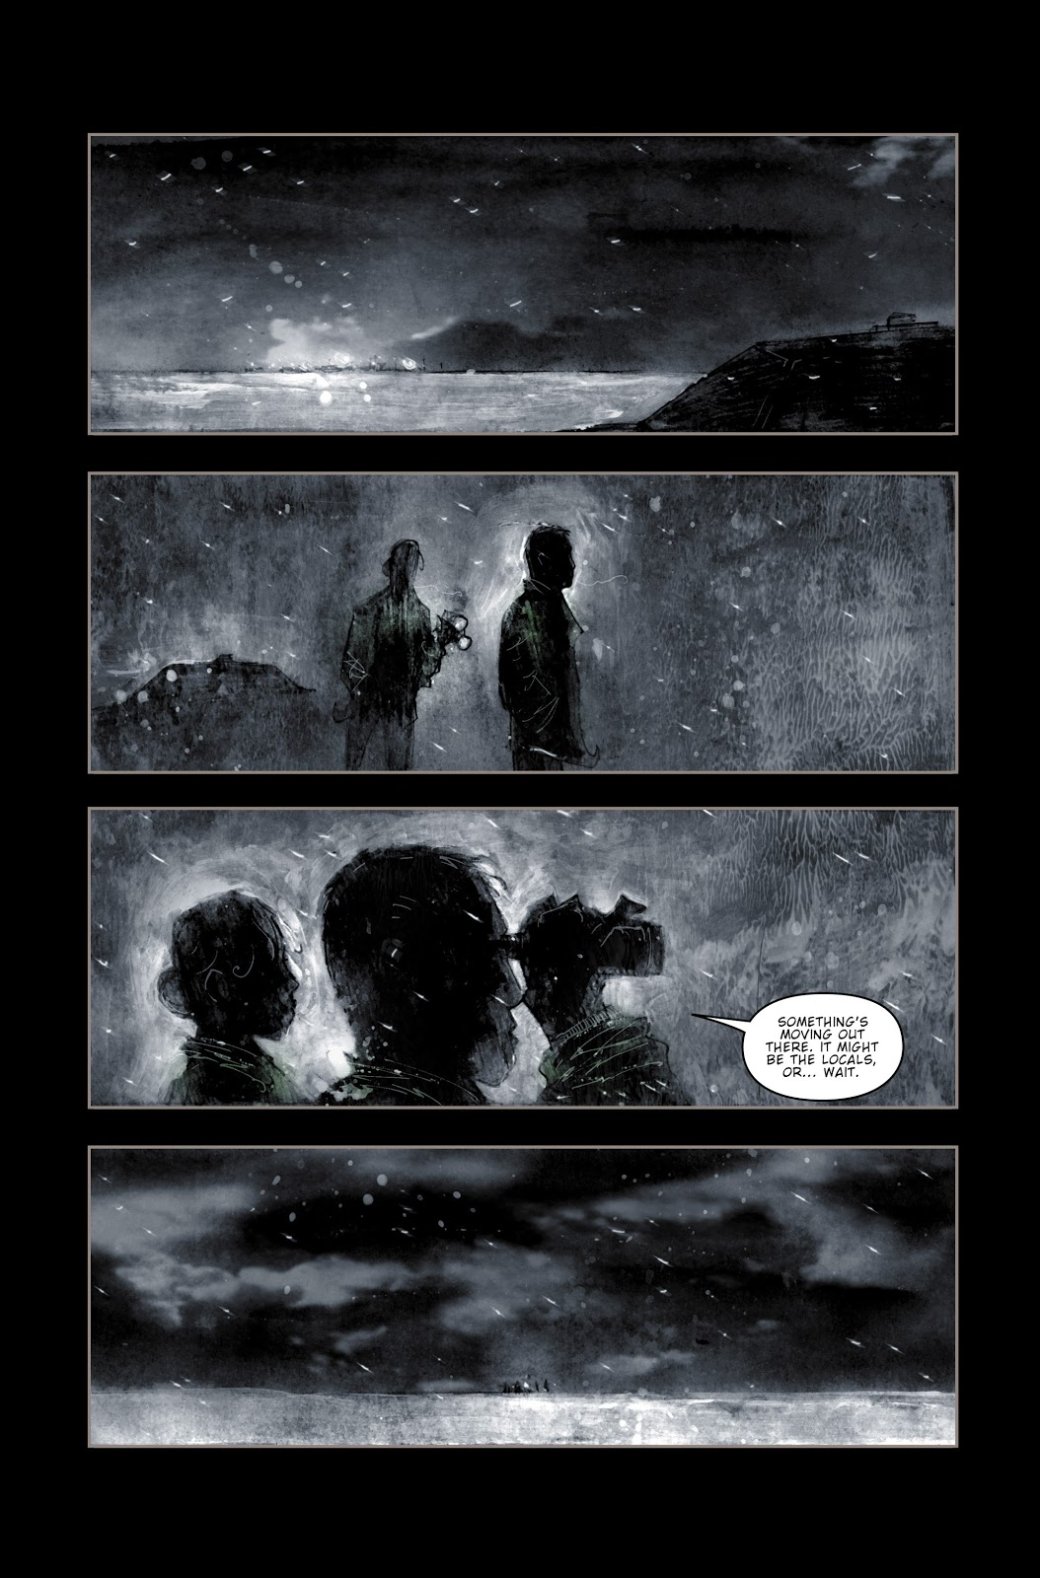 Галерея «30 дней ночи» — жутко-прекрасный комикс о вампирах, который скатился - 3 фото